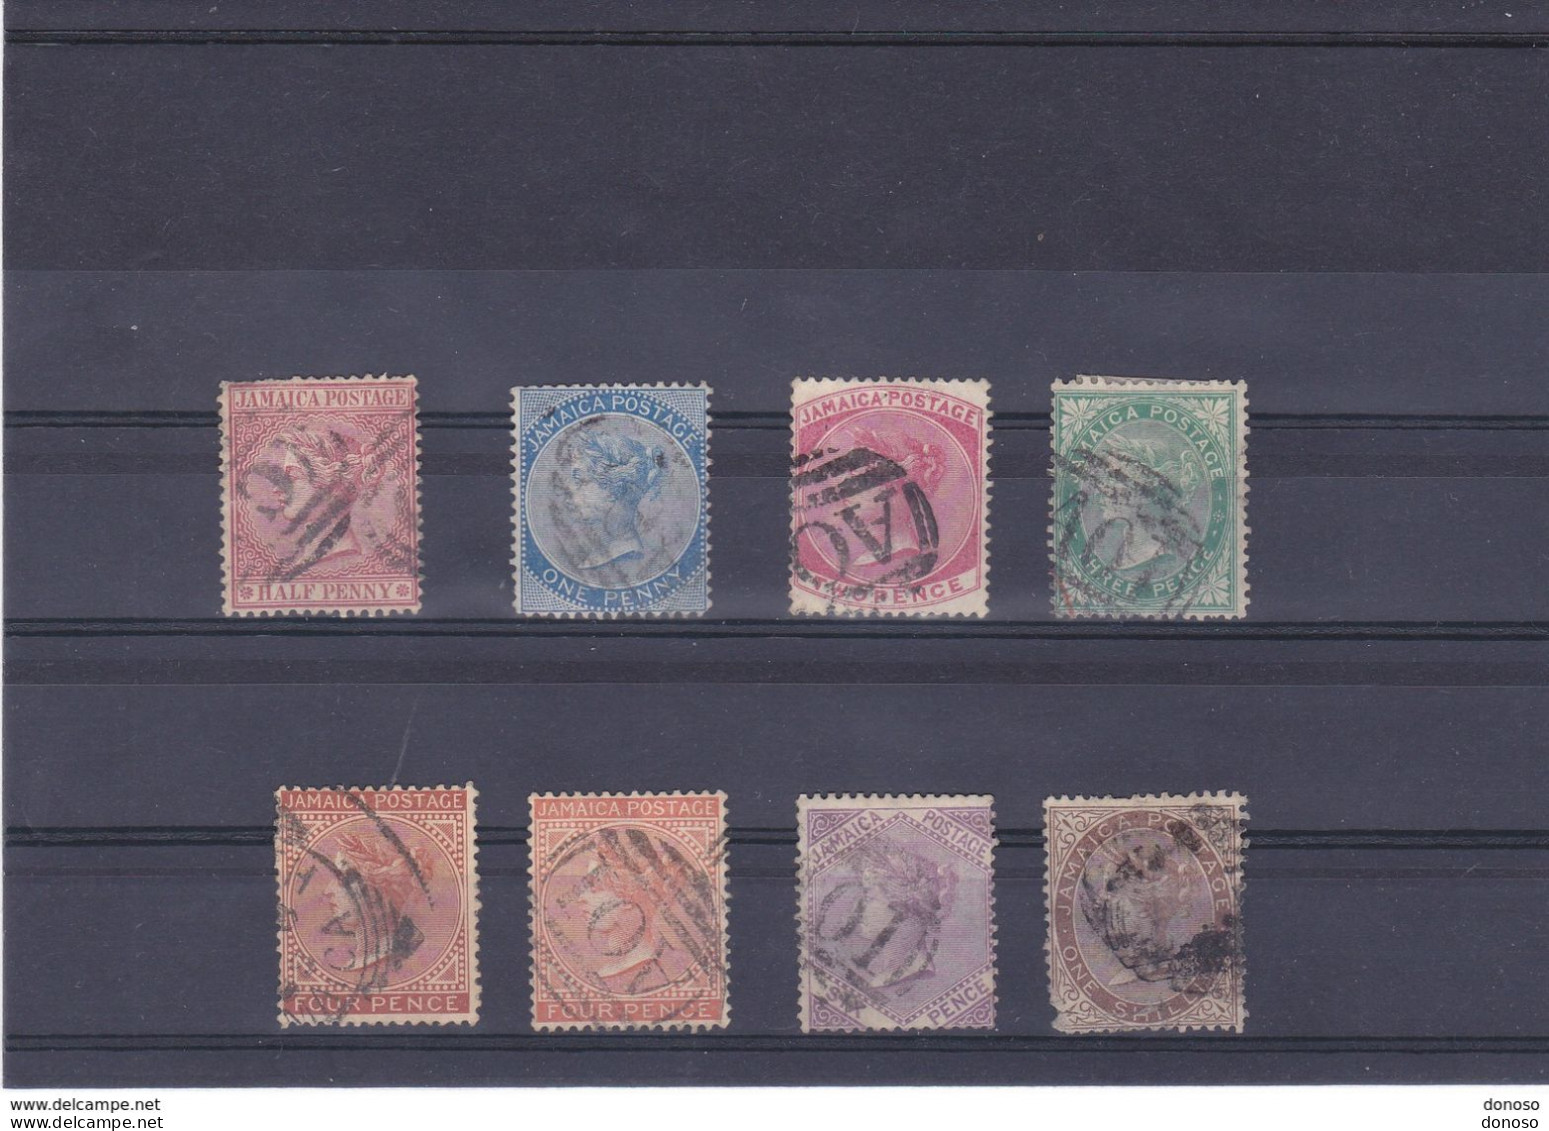 JAMAÏQUE 1870 Victoria  Yvert 7-13 Oblitéré, Cote : 62.50 Euros - Jamaïque (...-1961)